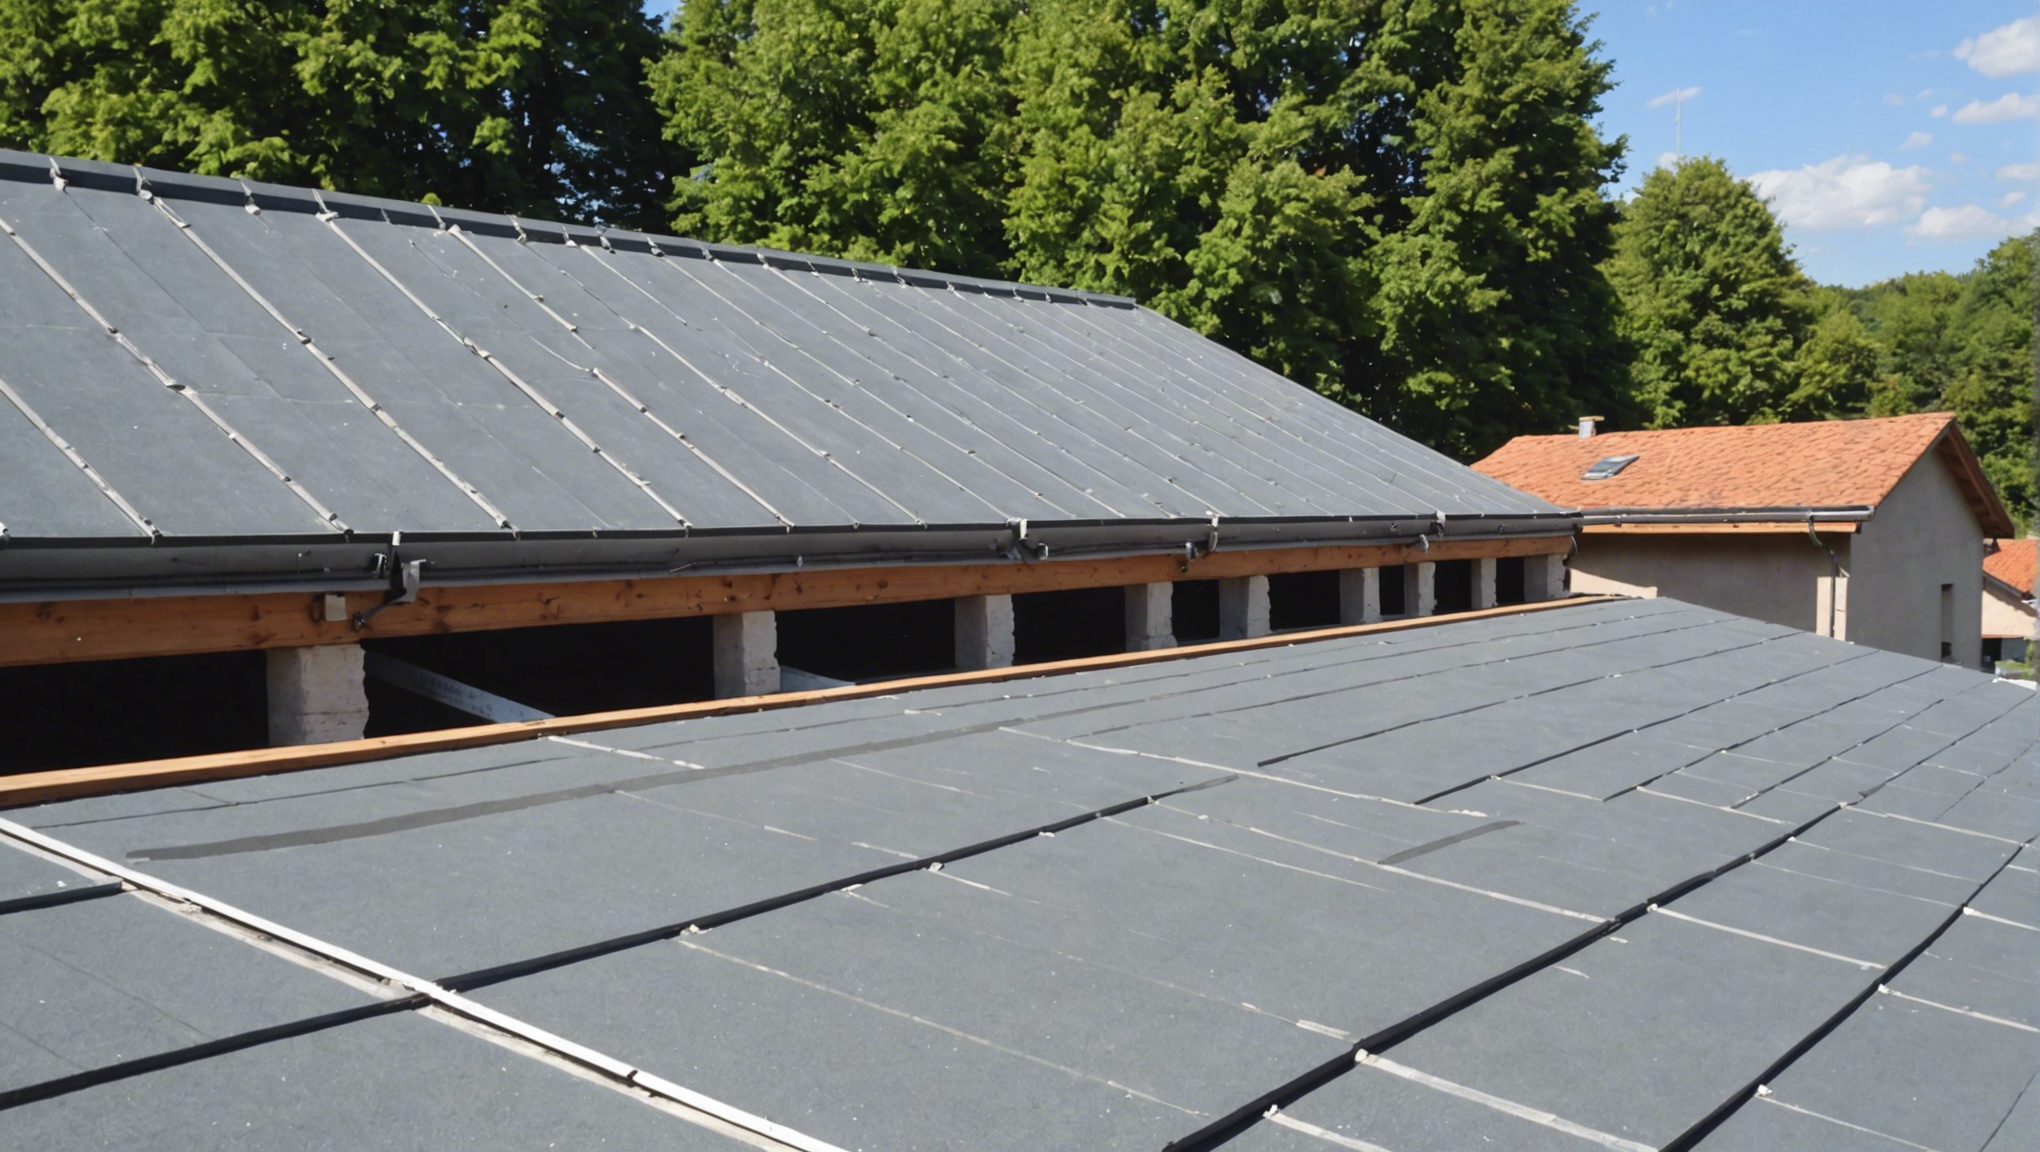 découvrez nos services de réparation et préparation d'isolation de toiture pour une protection optimale de votre maison.